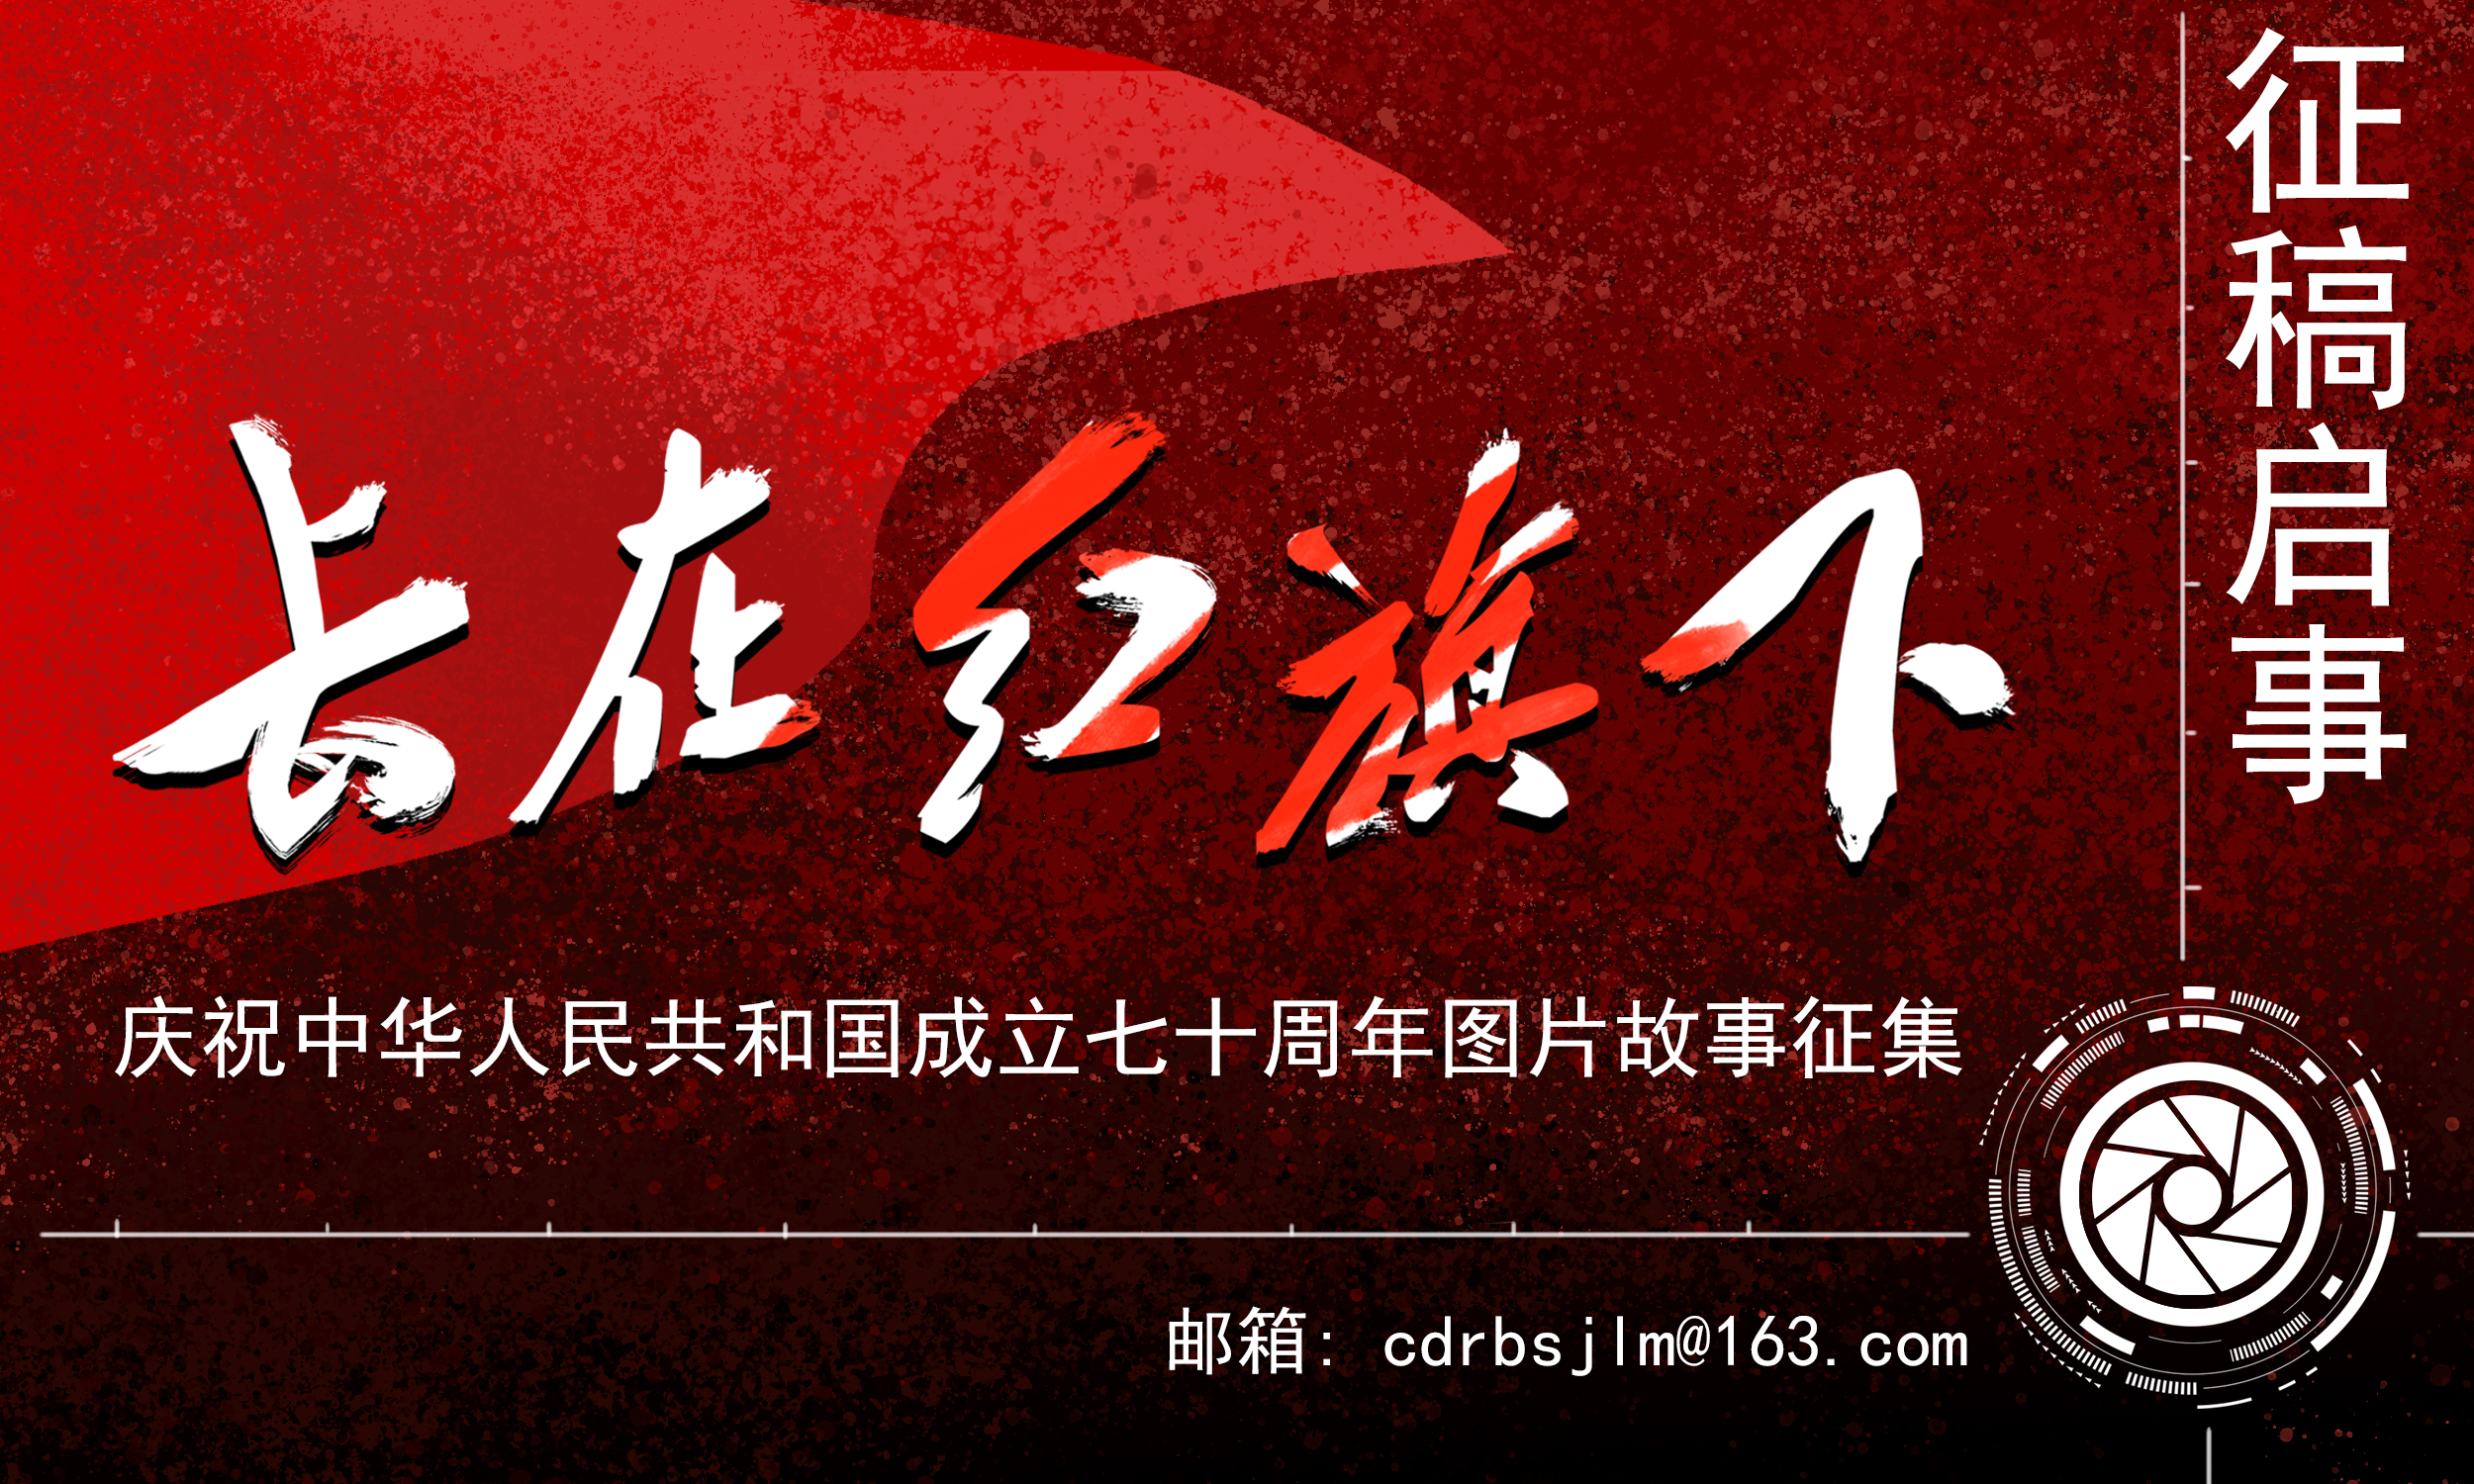 《长在红旗下》——庆祝新中国成立七十周年图片故事征集